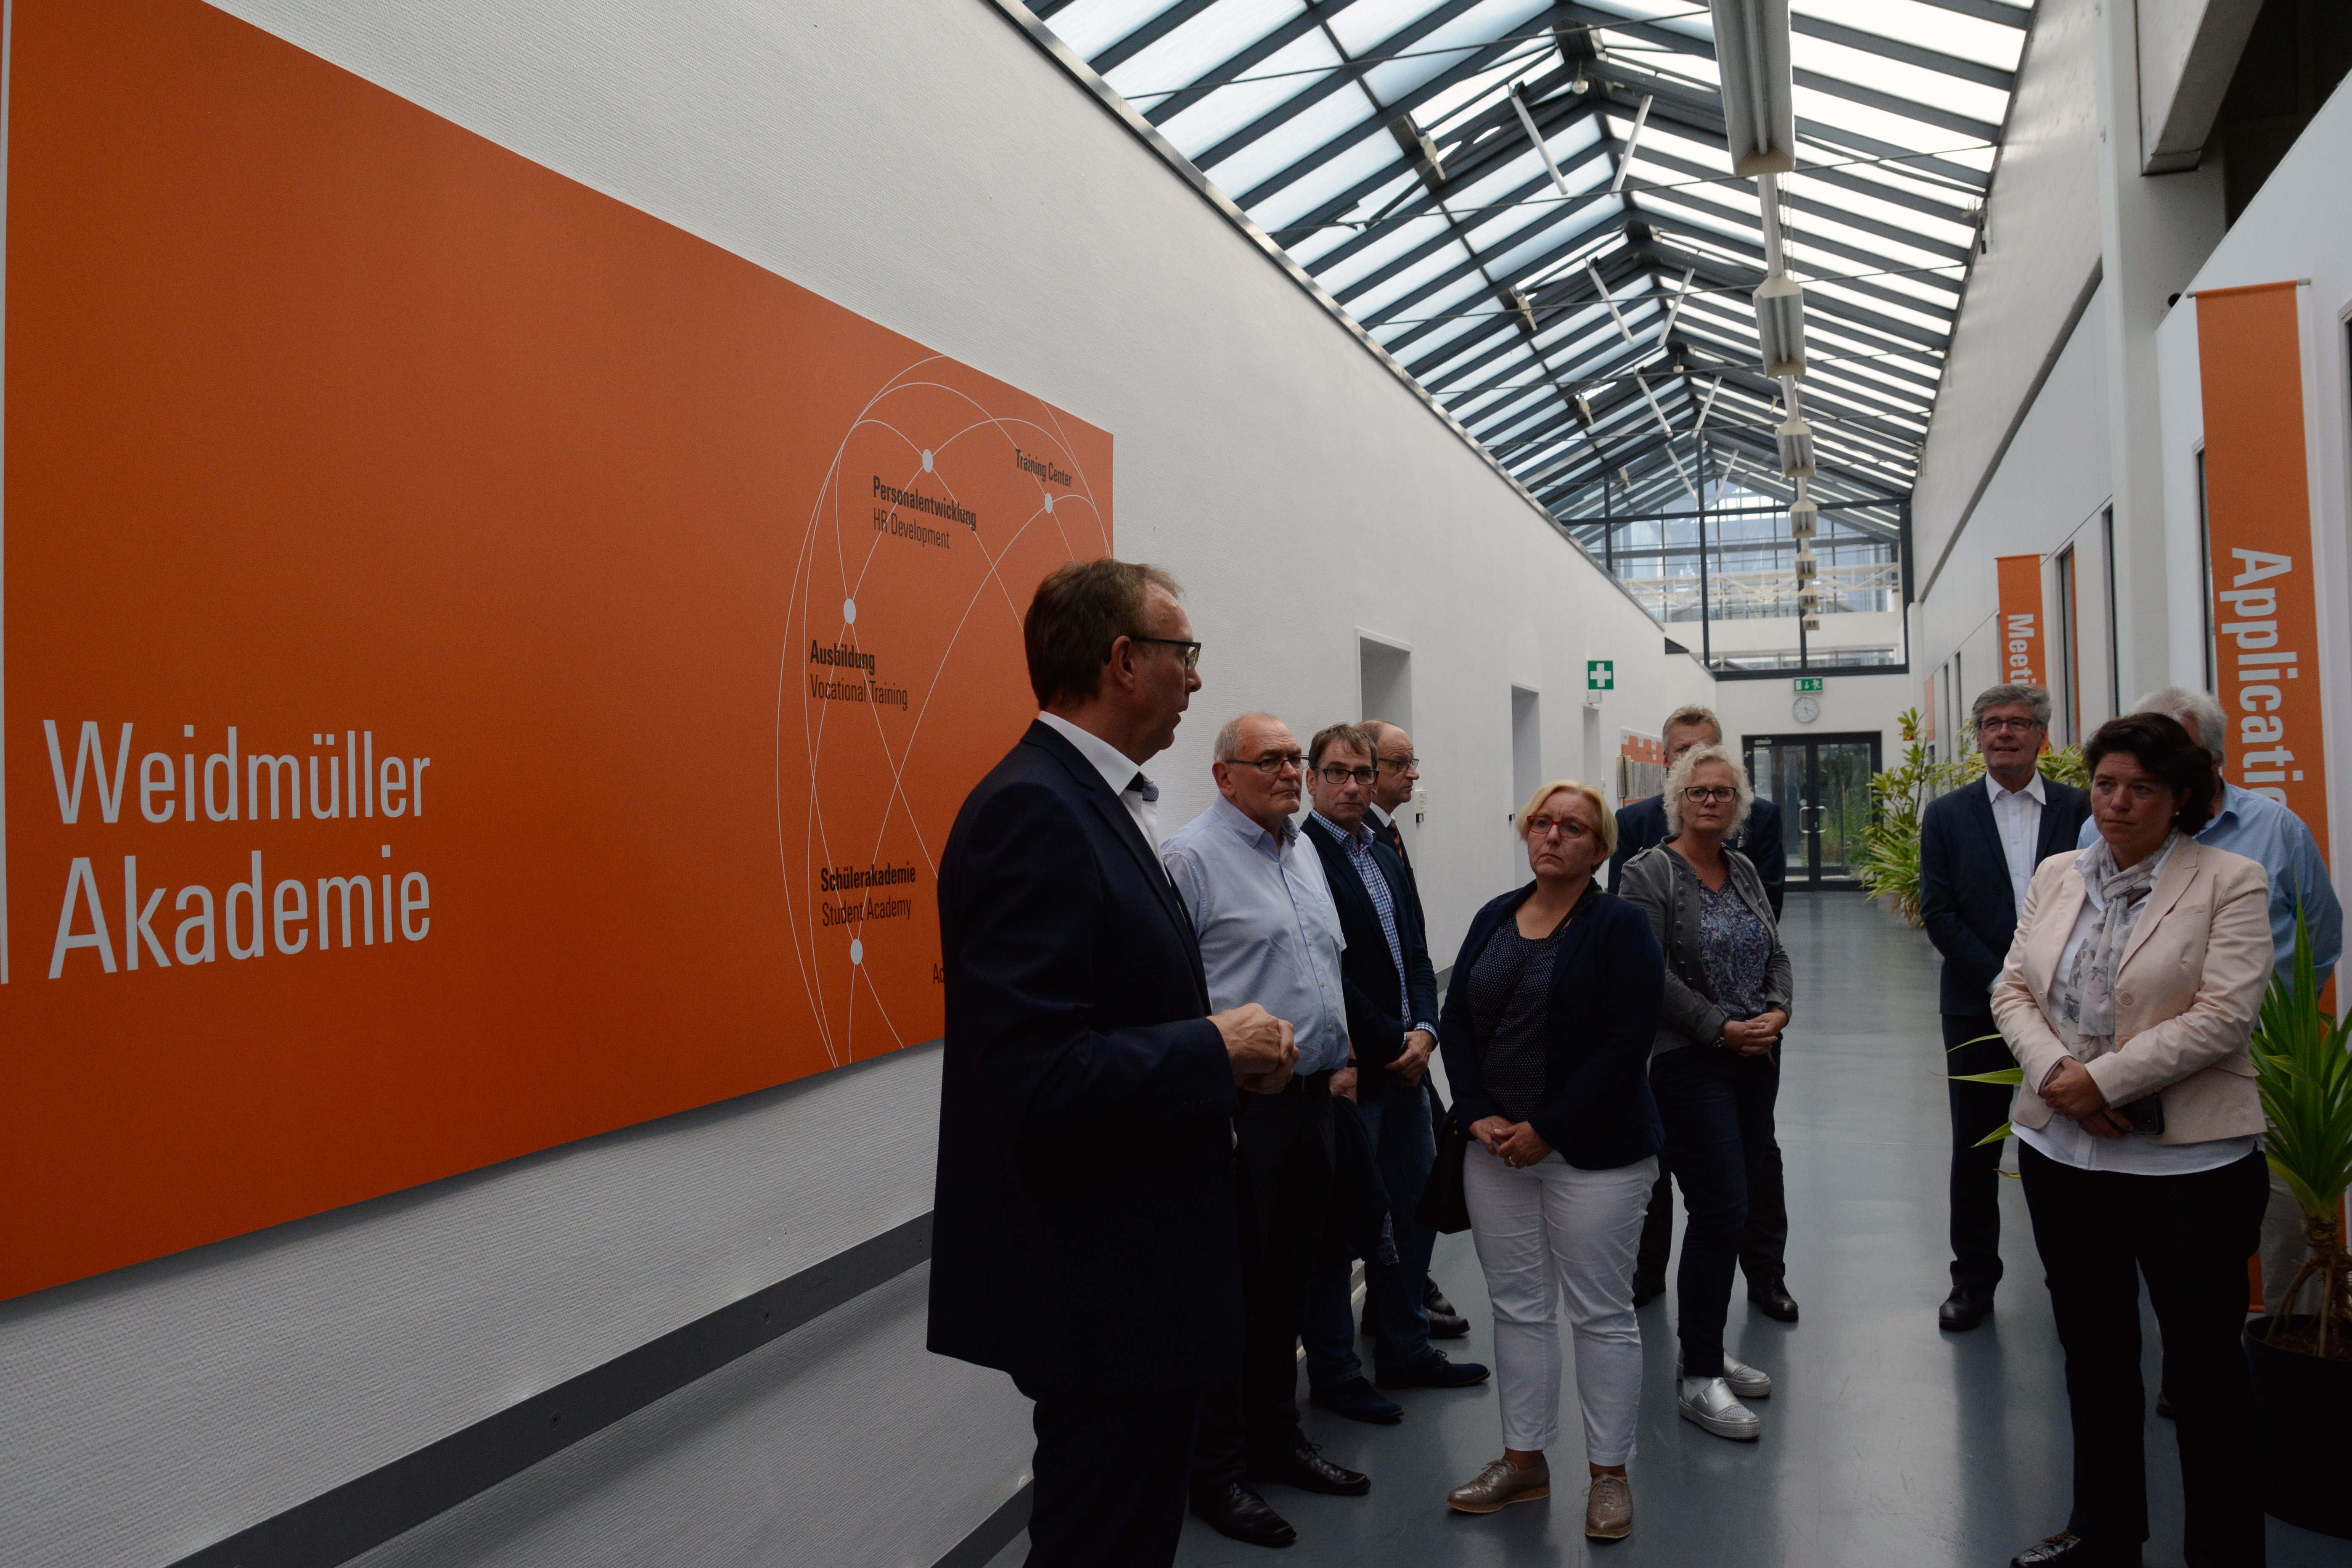 Abgeordnete und Repräsentanten der CDU informierten sich über Industrie 4.0 und Digitalisierung bei Weidmüller (Foto: Weidmüller)